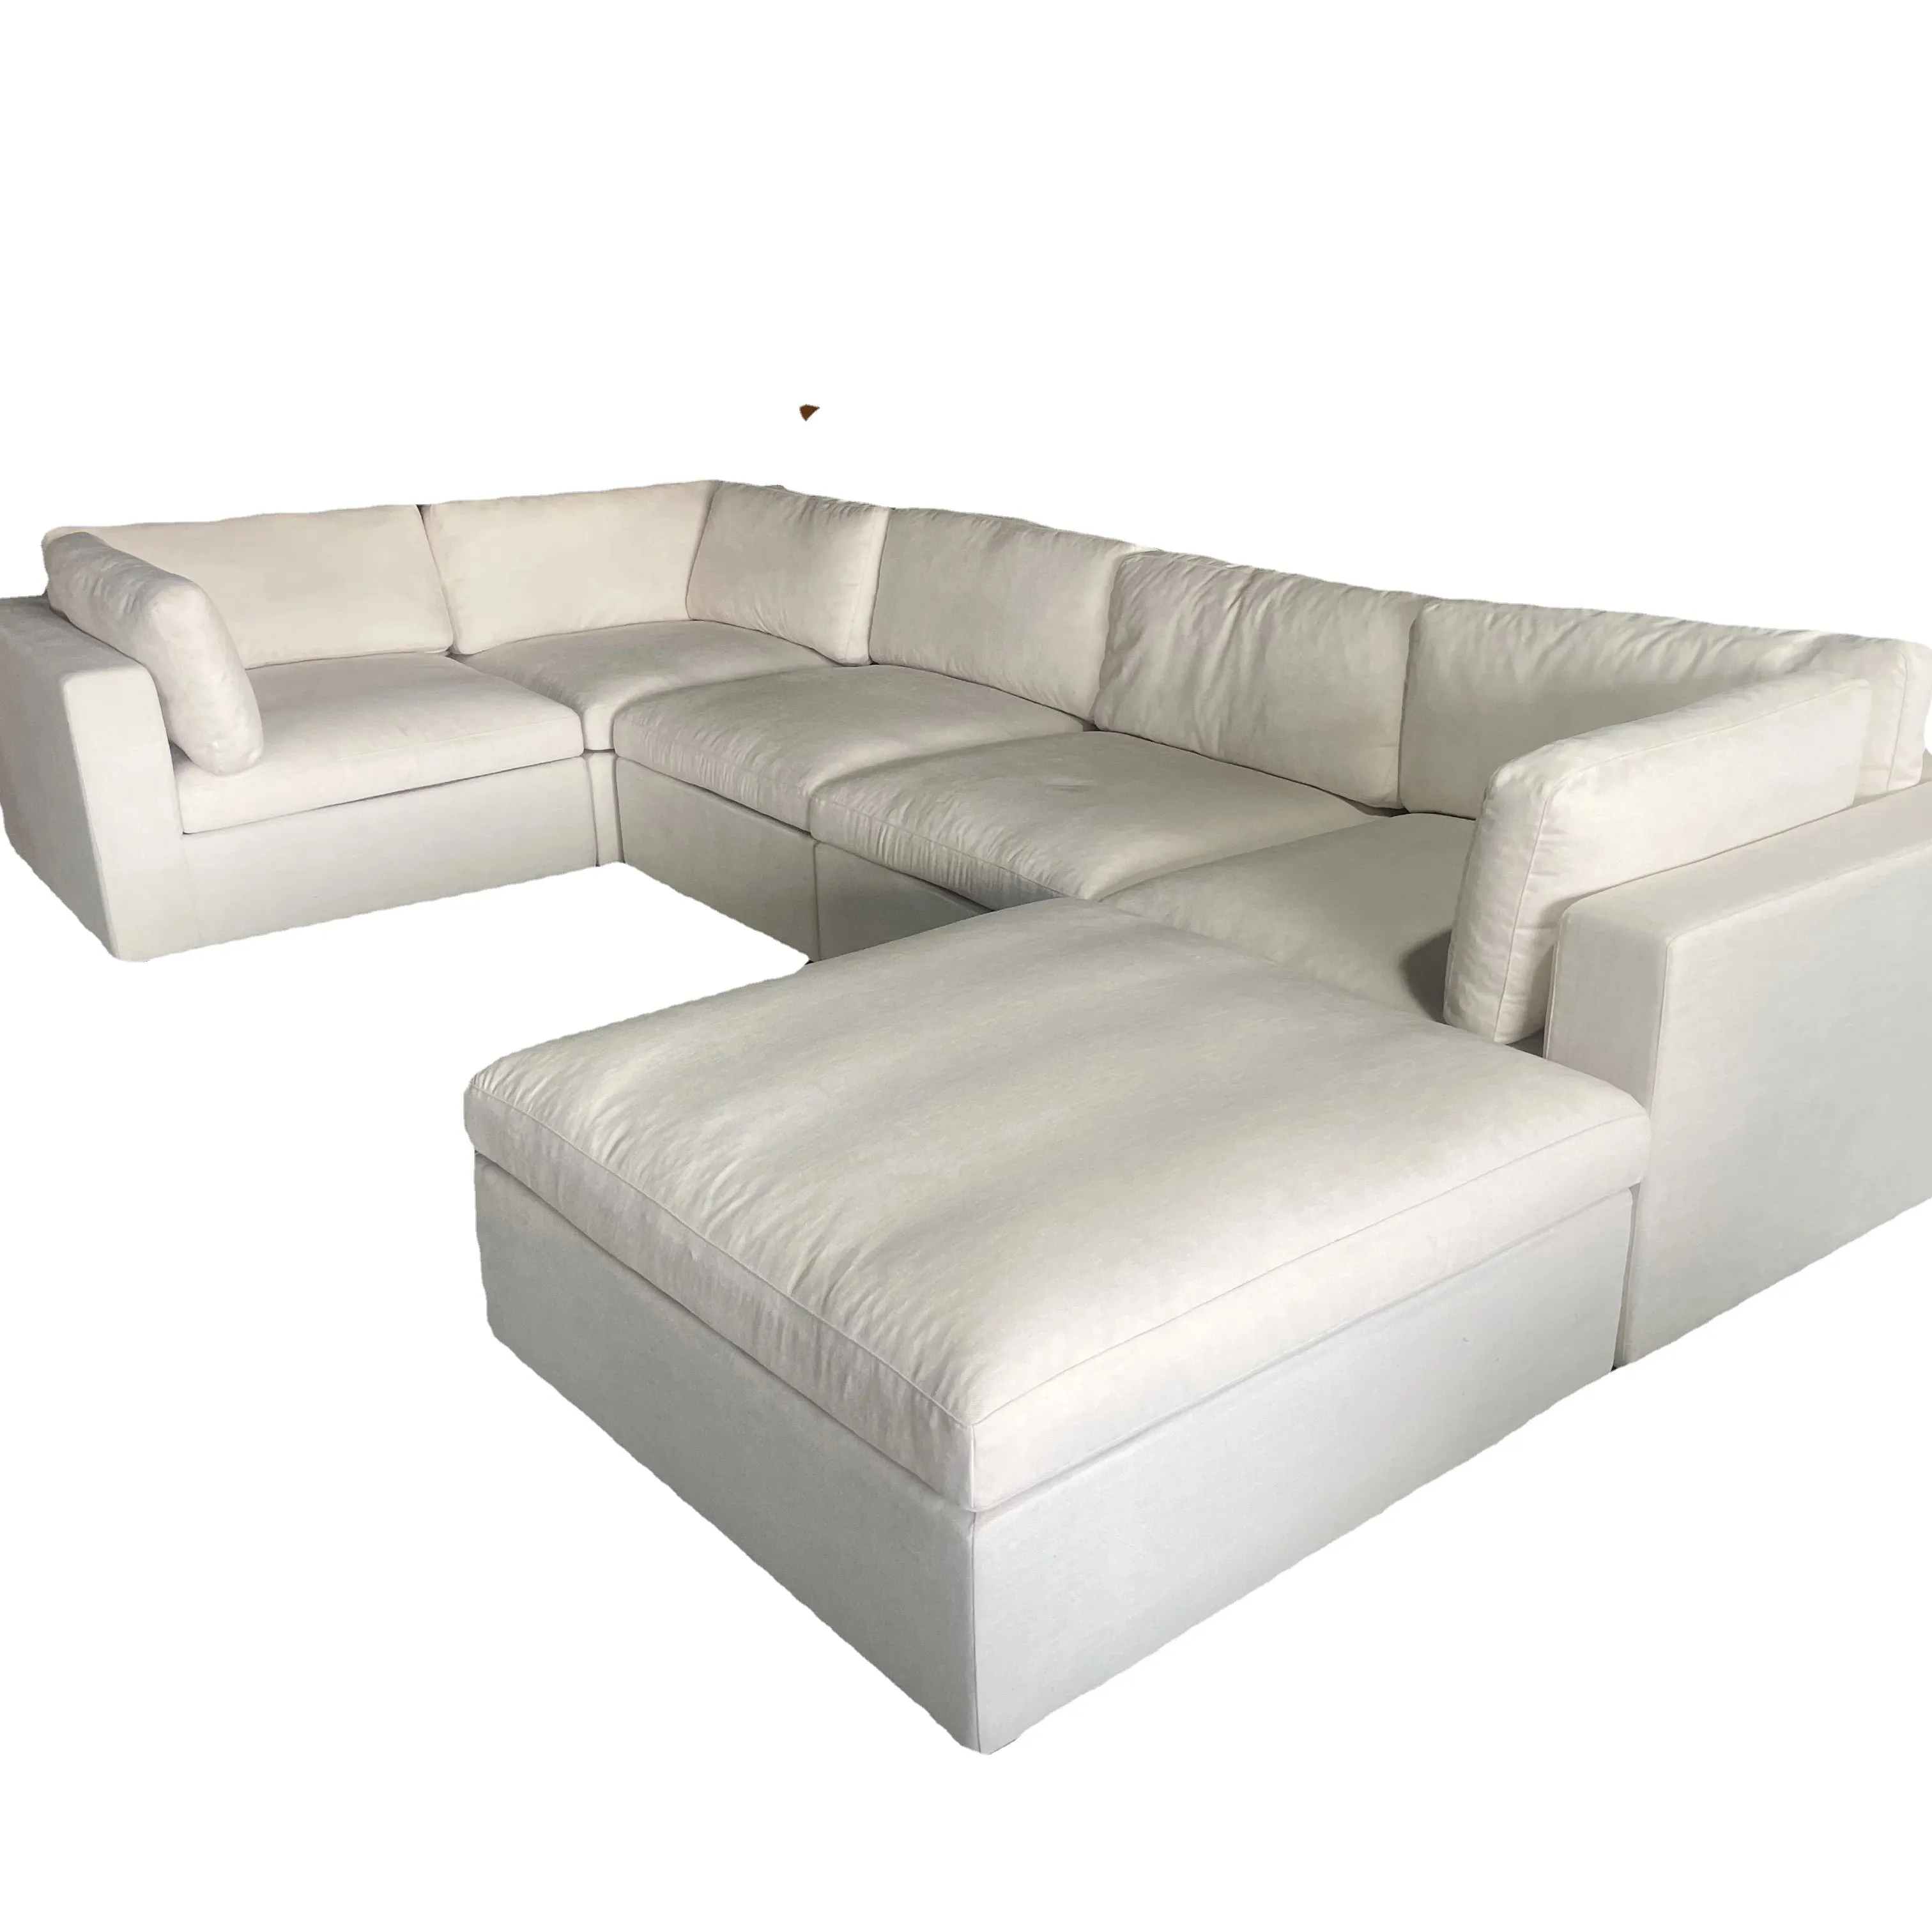 Sofá cama de nube blanca de lujo moderno sofá modular de nube en forma de U sofá seccional